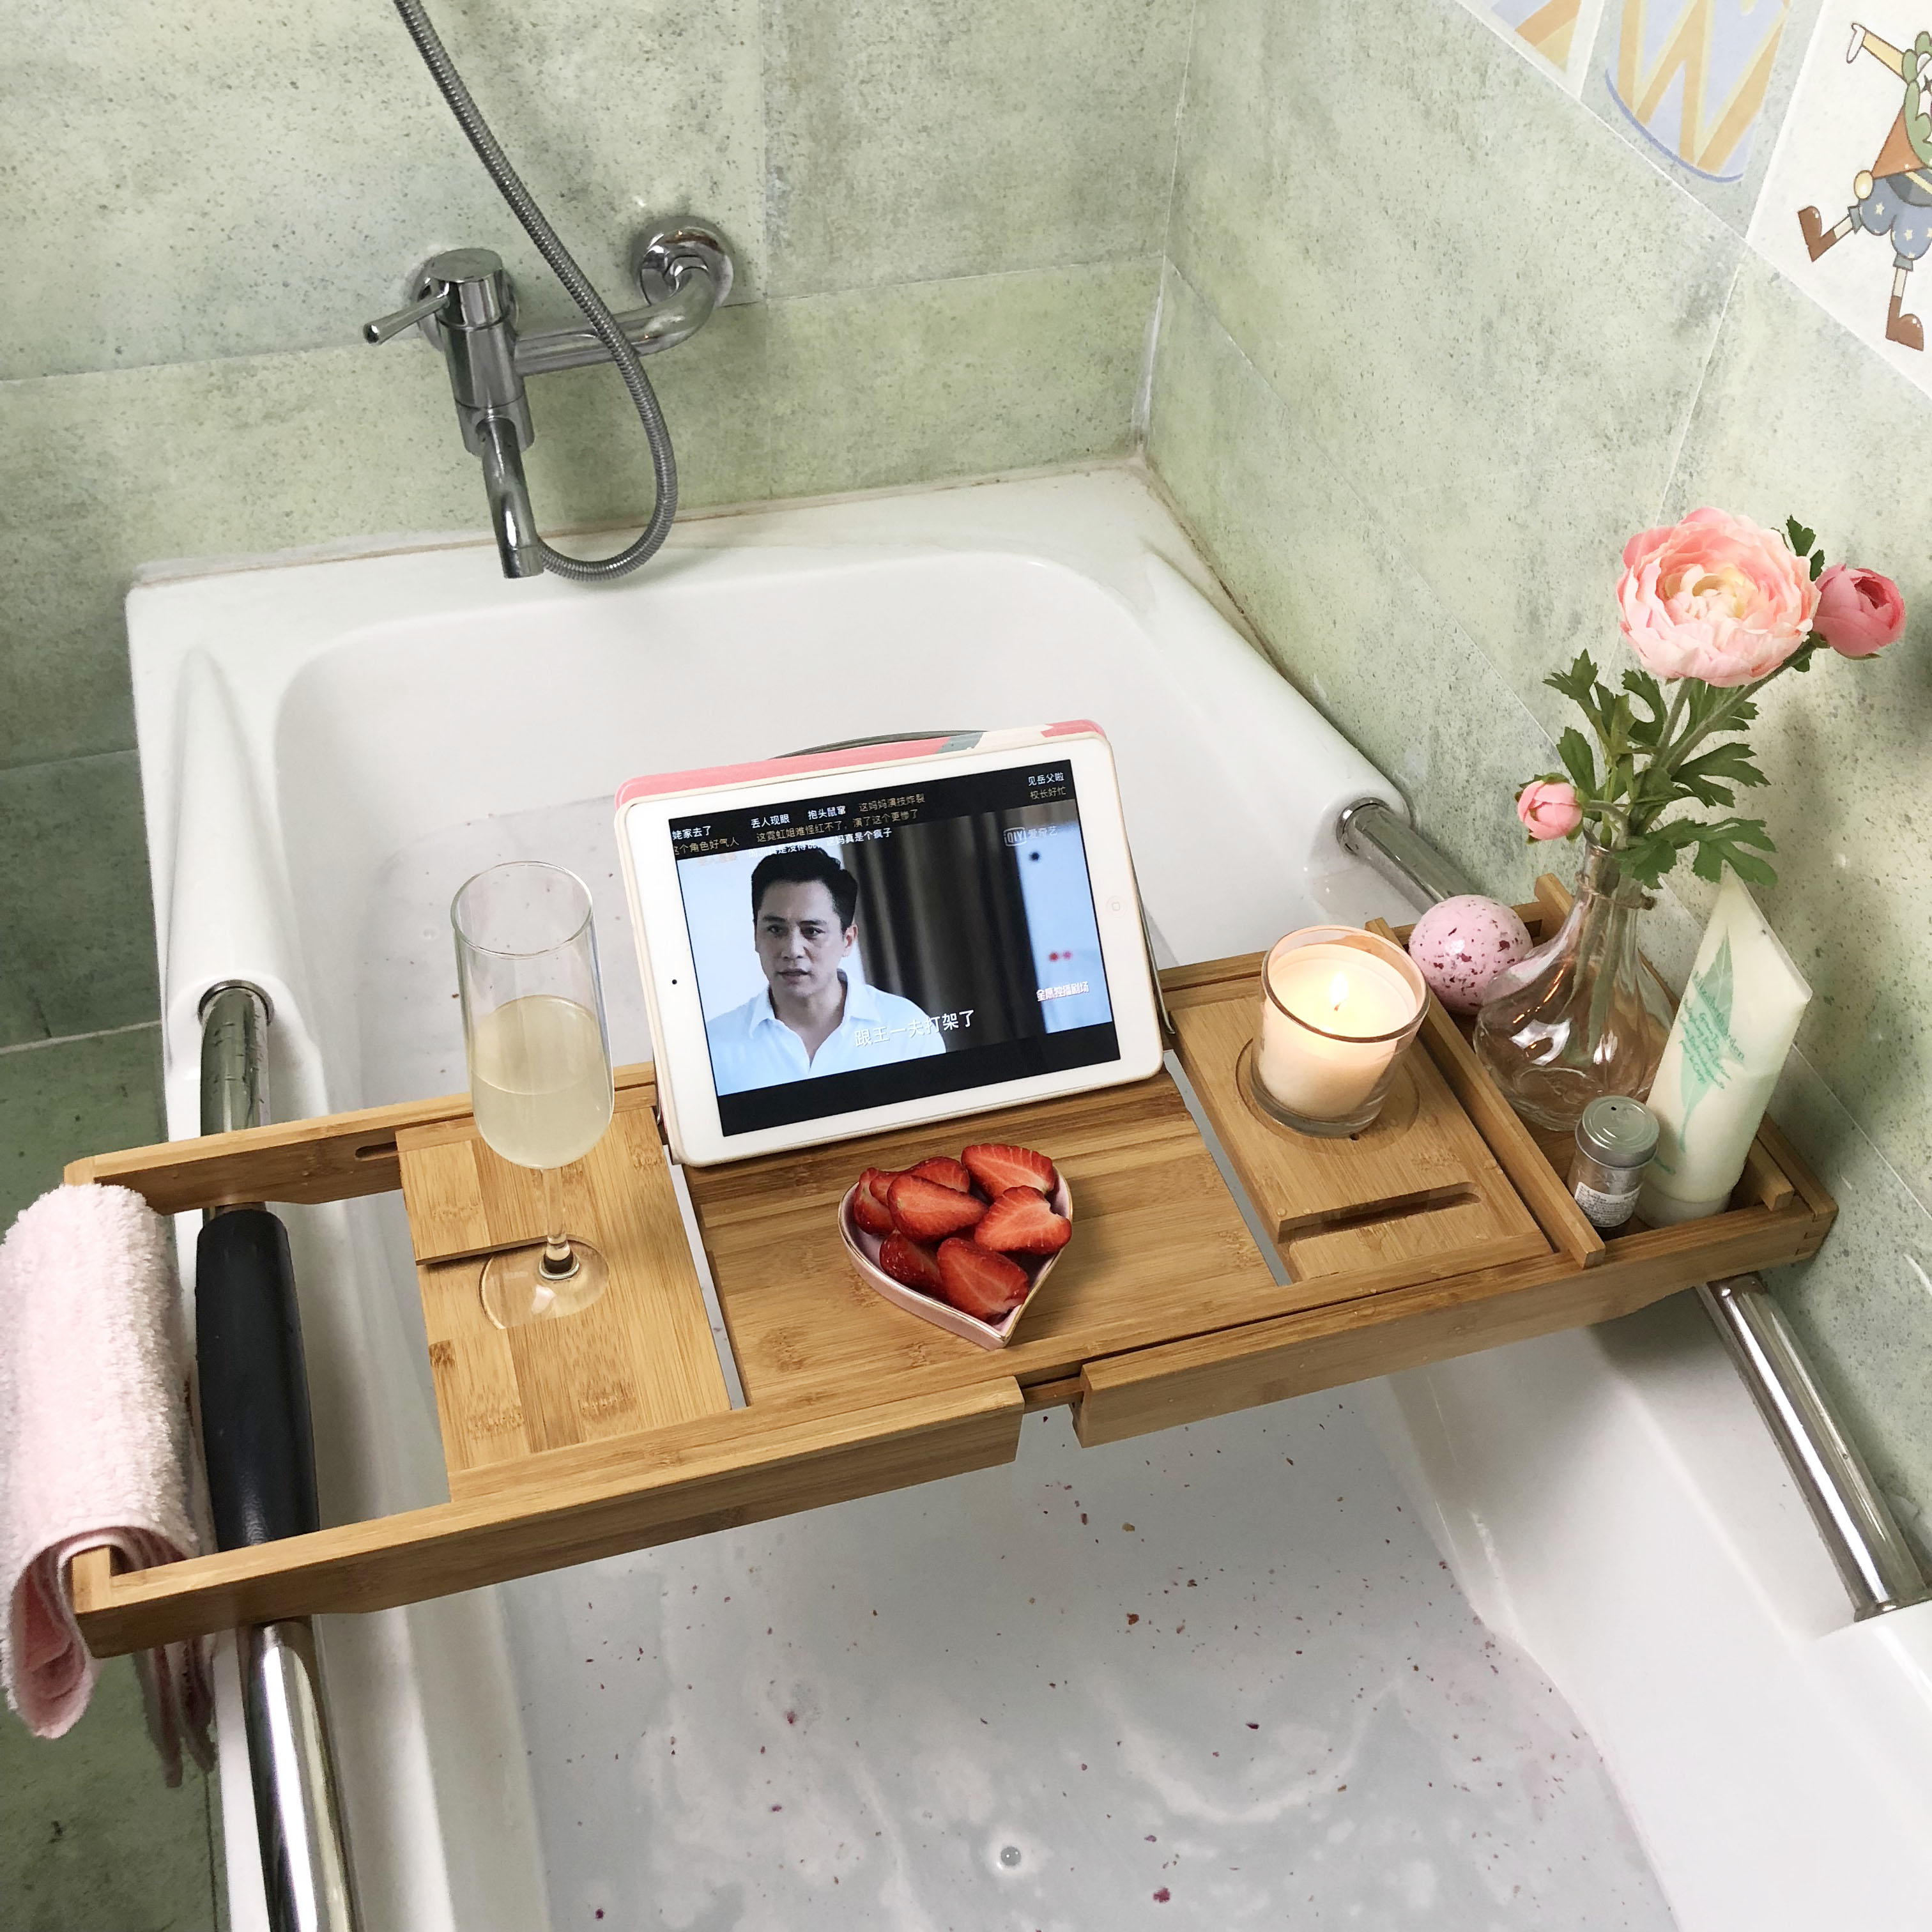 浴缸置物架 泡澡架 浴缸架浴室伸縮置物架板多功能浴缸隔板衛生間泡澡iPad手機支架竹【XXL20129】